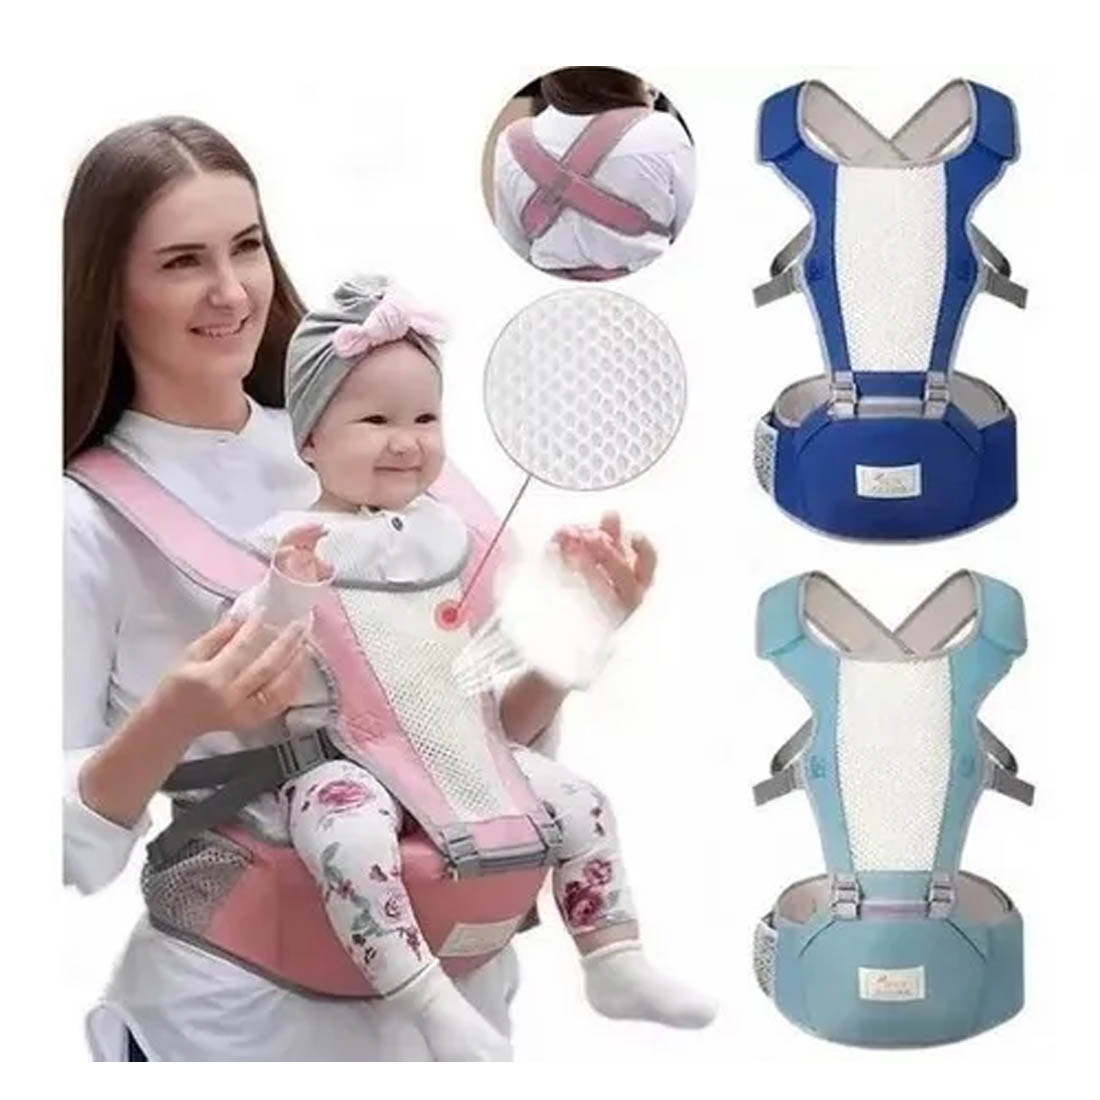 GratoKids - Portabebe canguro sencillo y super práctico para llevar a tu  bebé a todo lado. Colores y diseños variados. Precio $13 Realiza tu pedido  al whatsapp 👉📱  Hacemos envíos 🚚